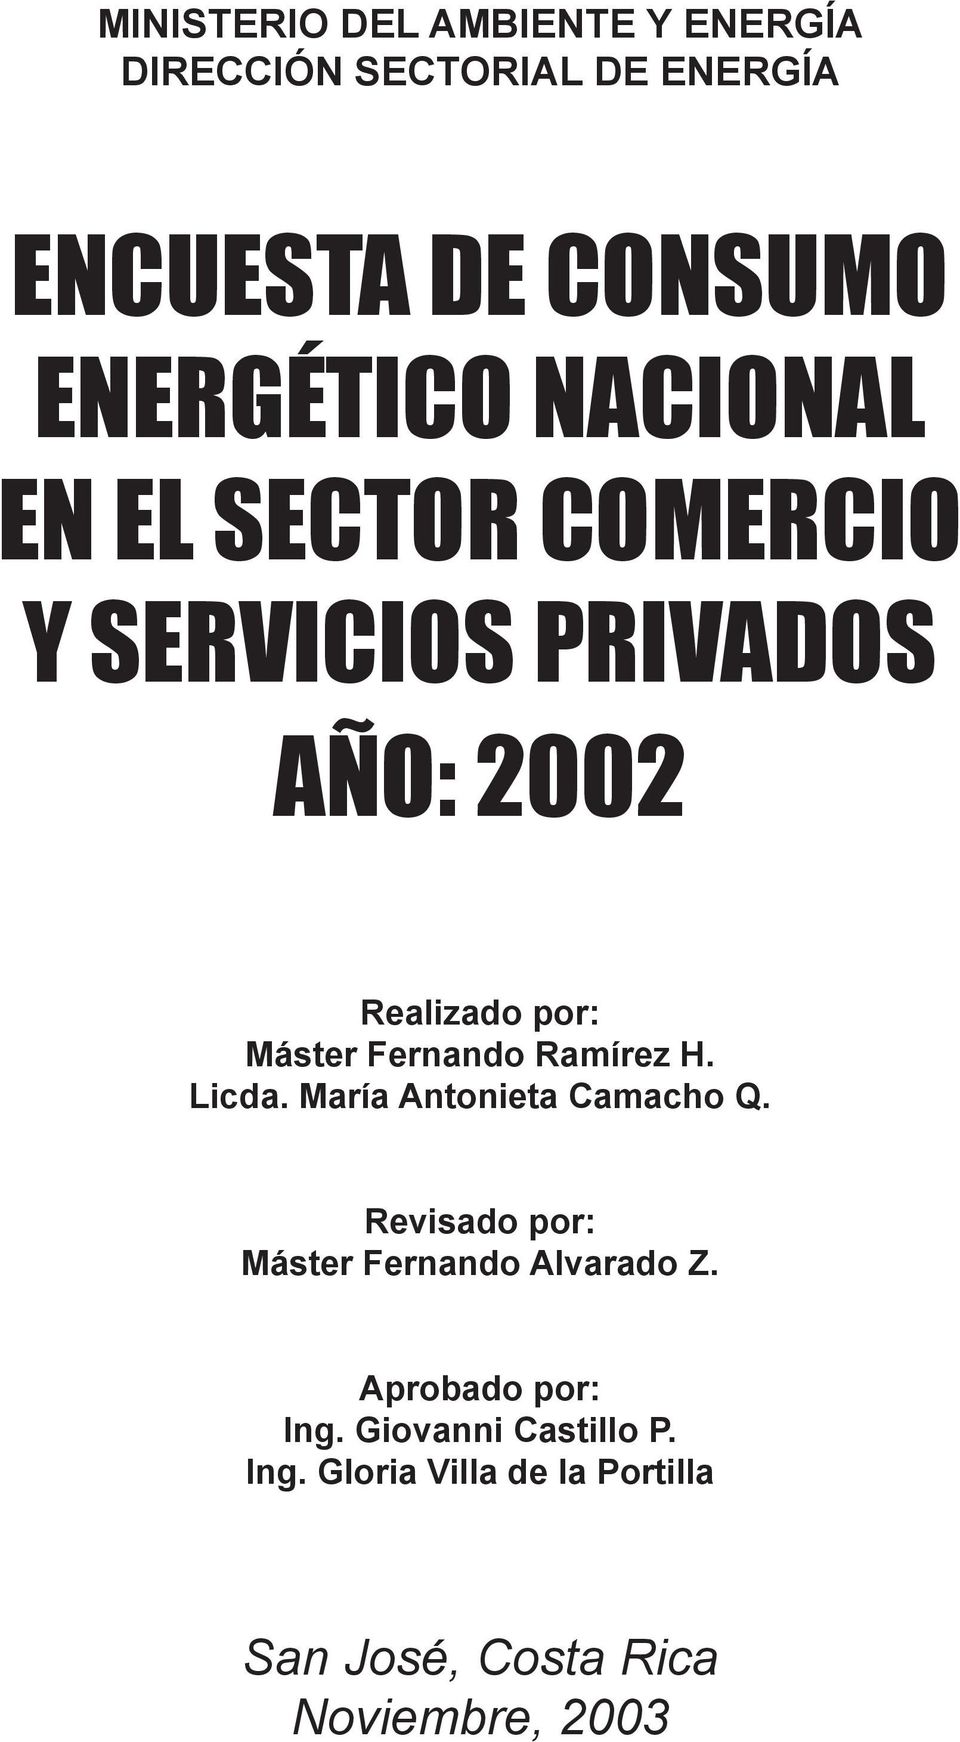 Ramírez H. Licda. María Antonieta Camacho Q. Revisado por: Máster Fernando Alvarado Z.